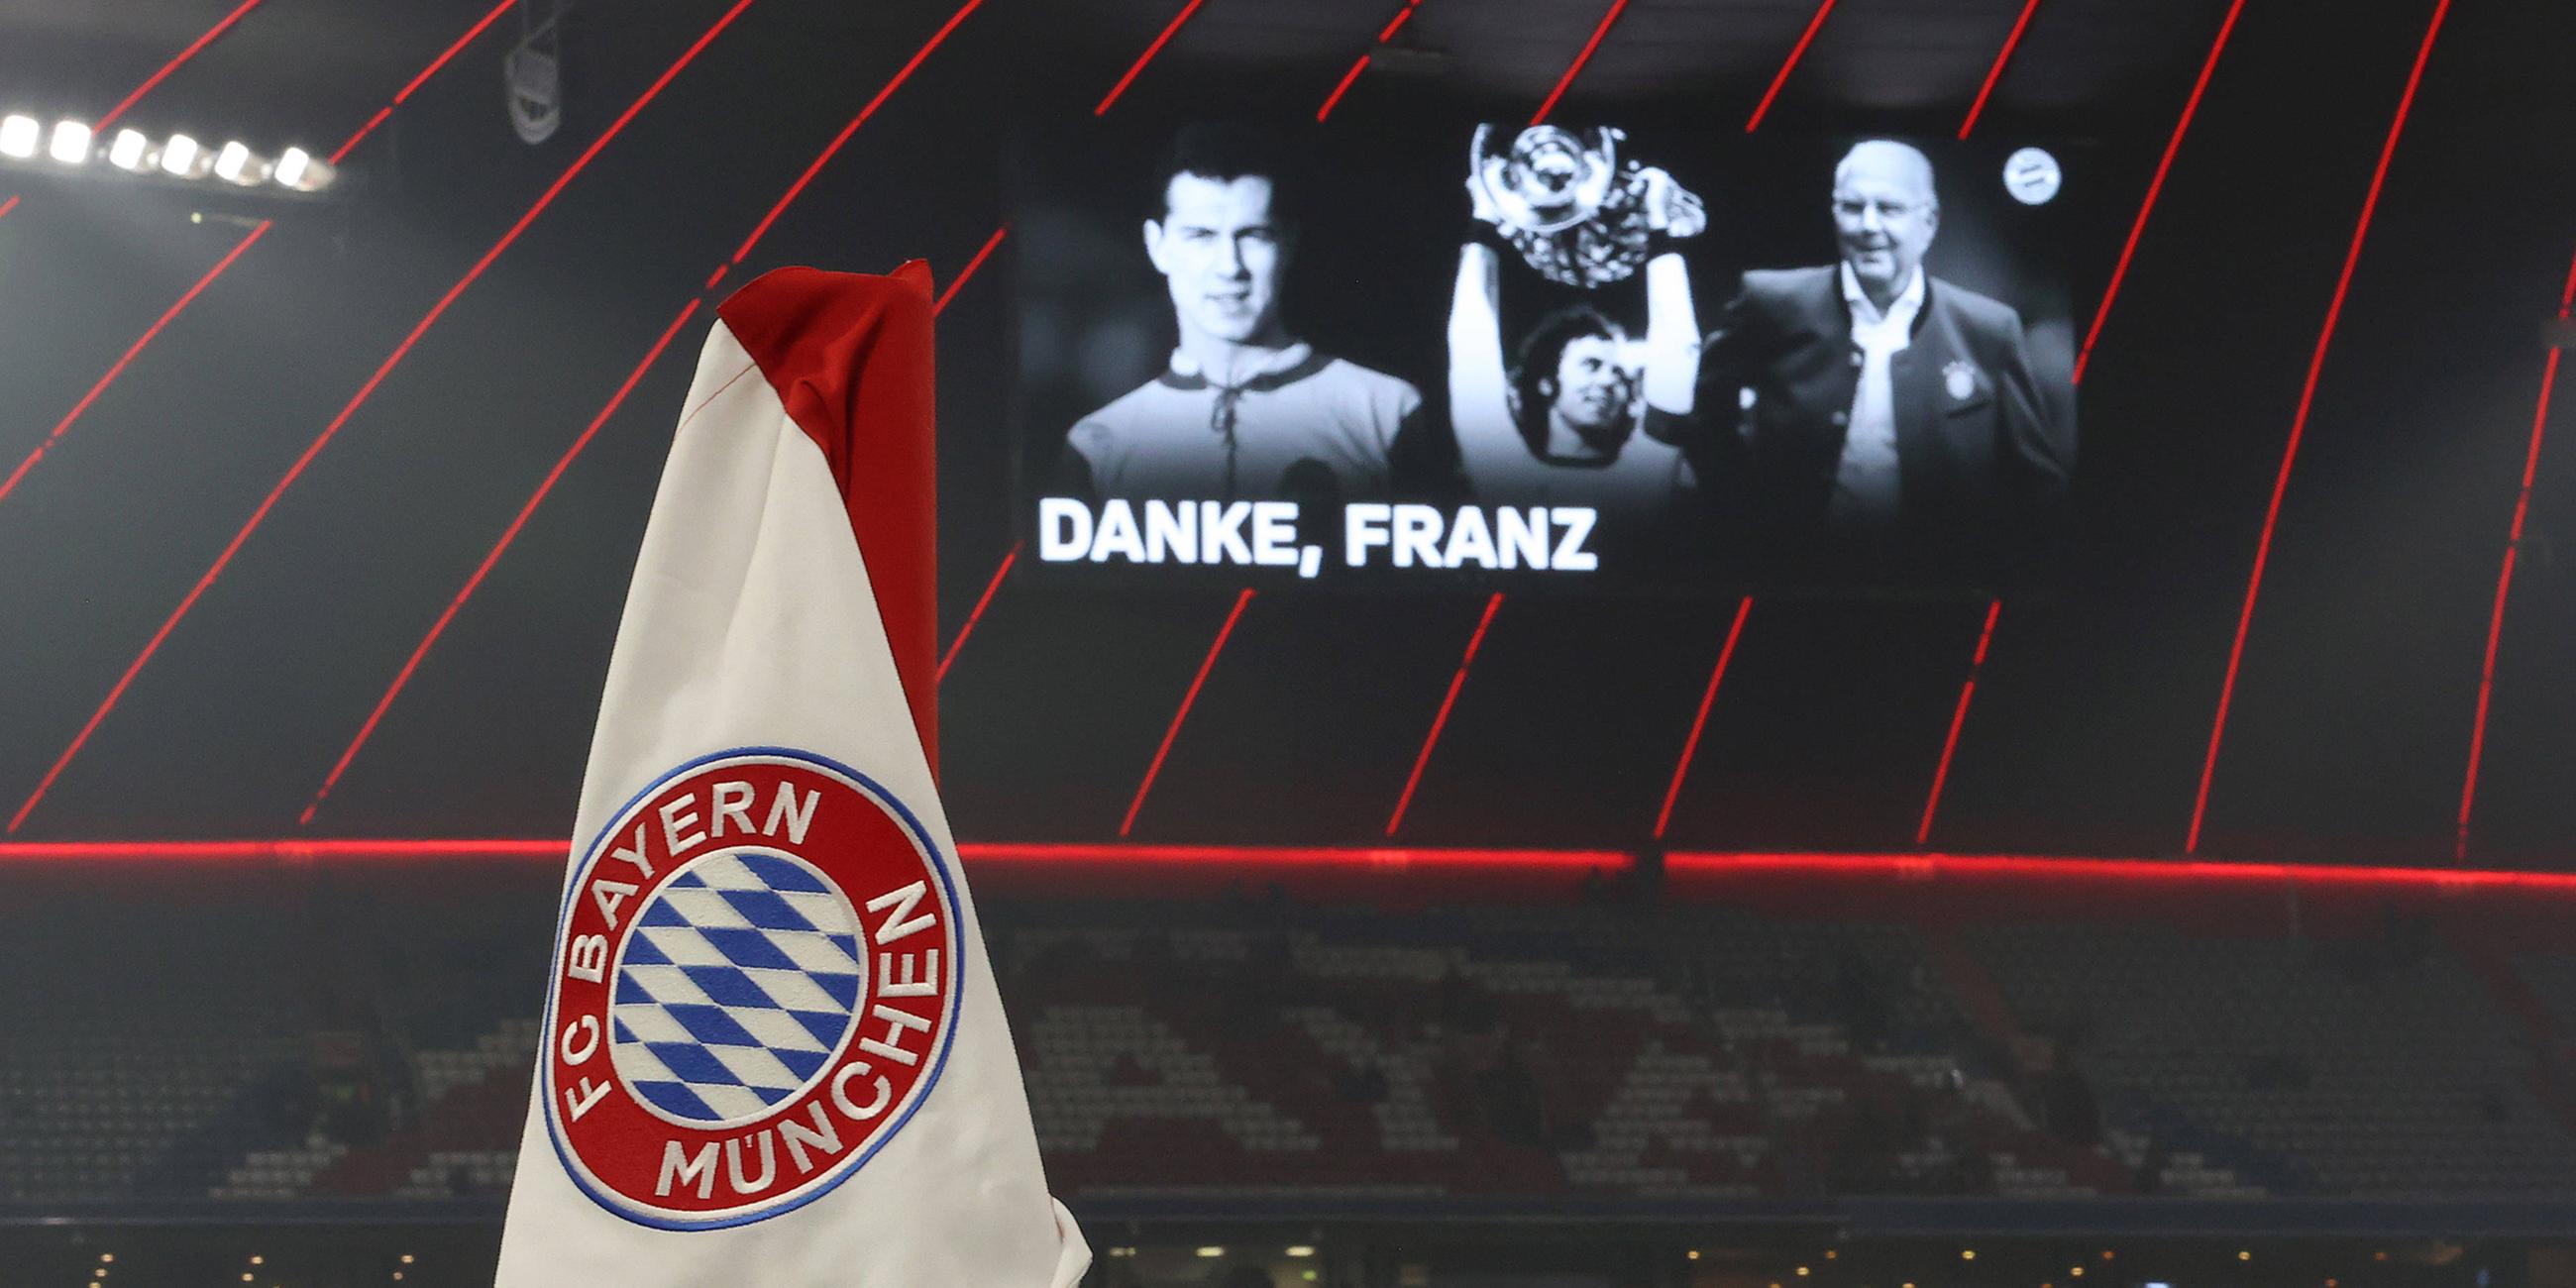 Der FC Bayern München gedenkt dem verstorbenen Ehrenpräsidenten Franz Beckenbauer auf der Anzeigetafel in der Allianz Arena in München.